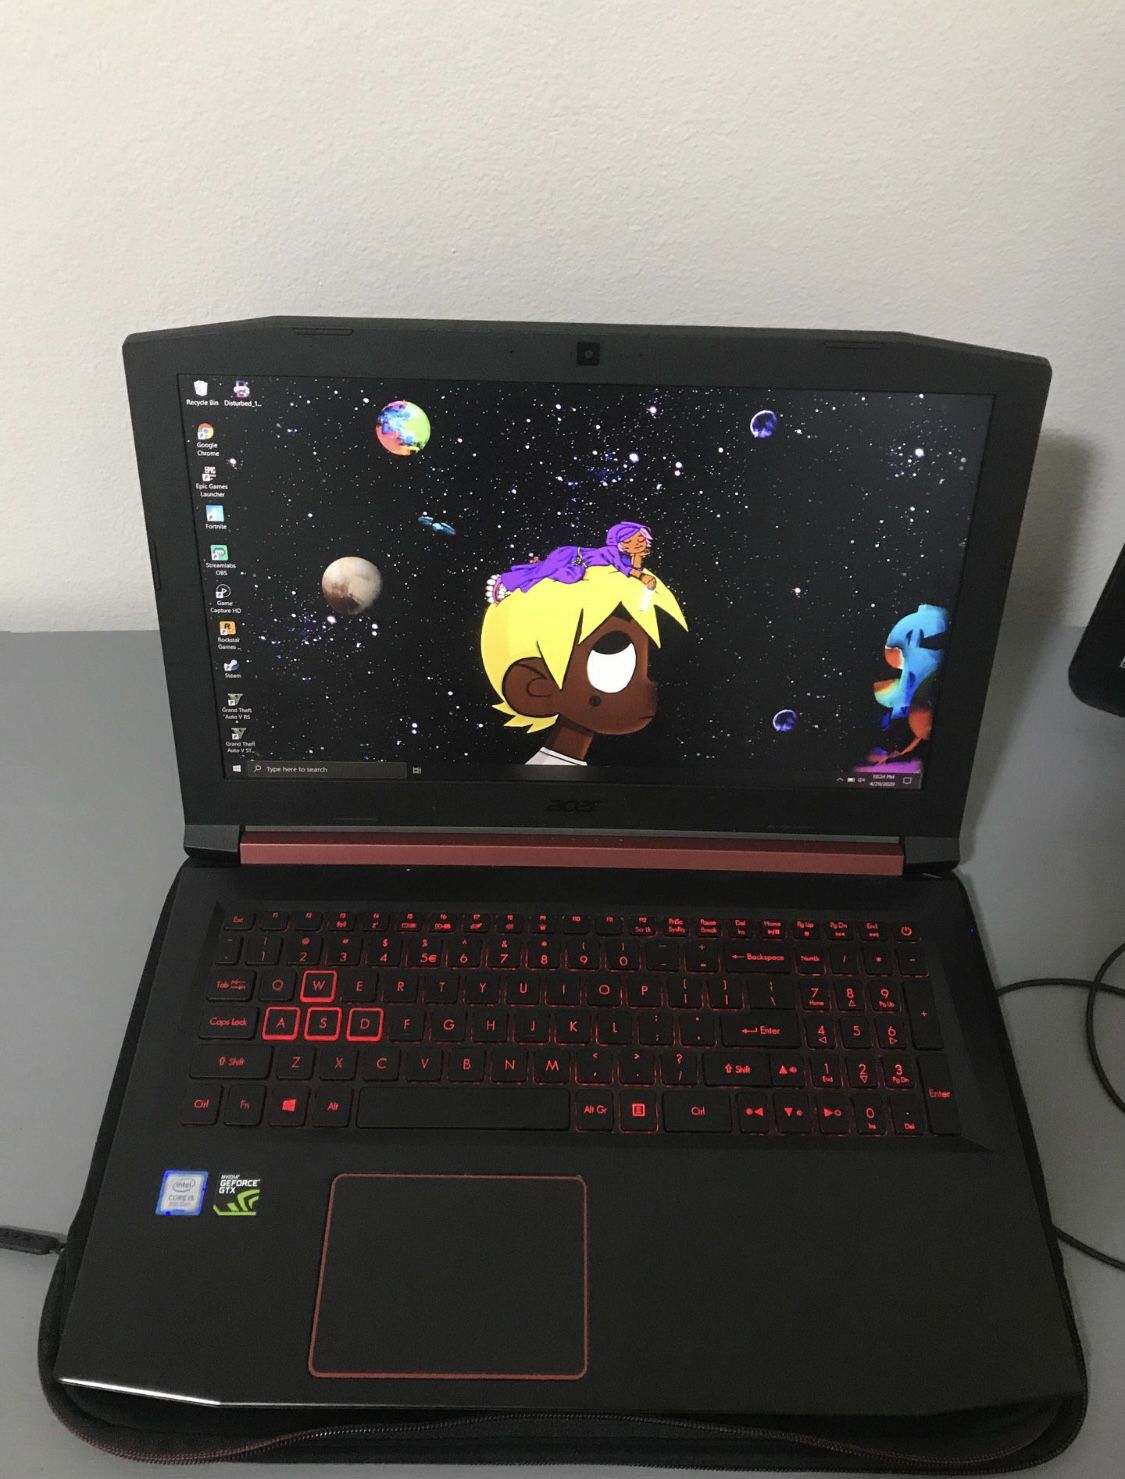 Acer Nitro 5 Gaming Laptop